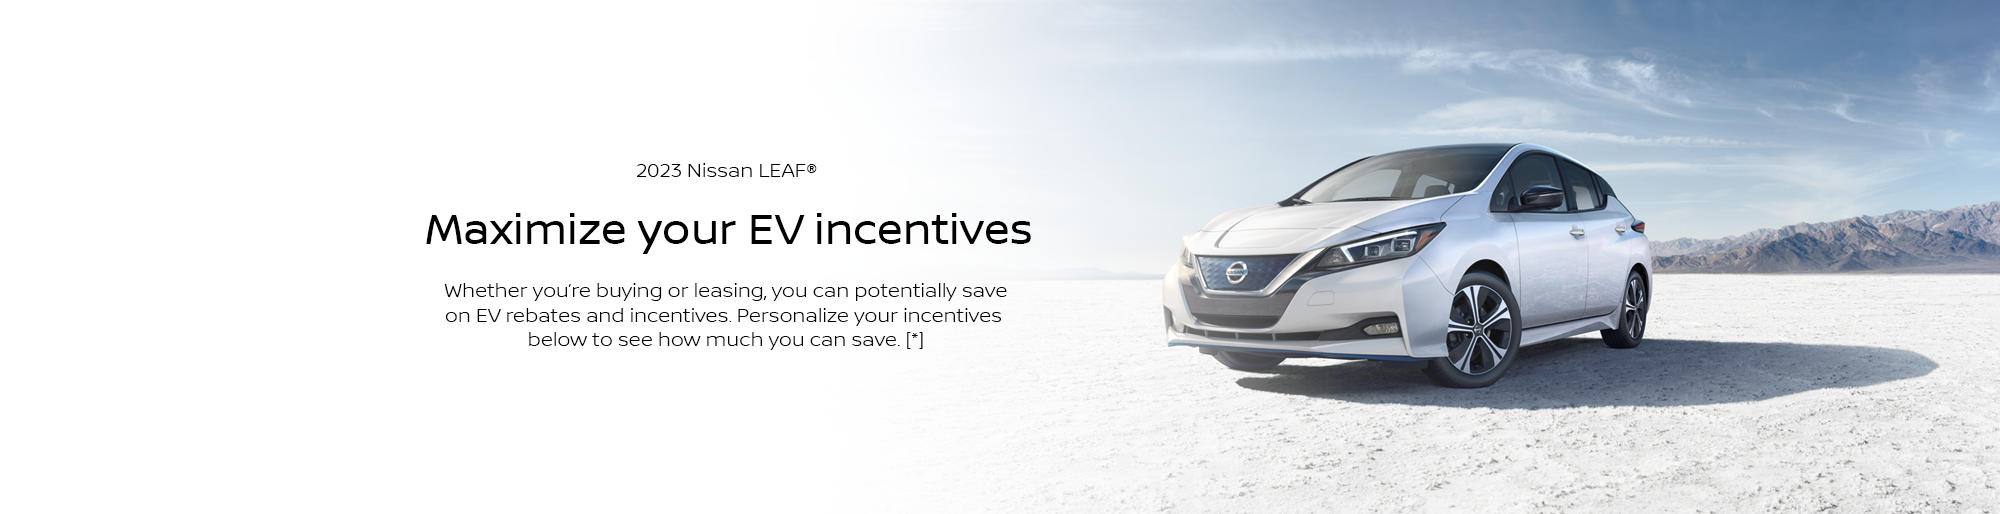 nissan-leaf-ev-rebates-incentives